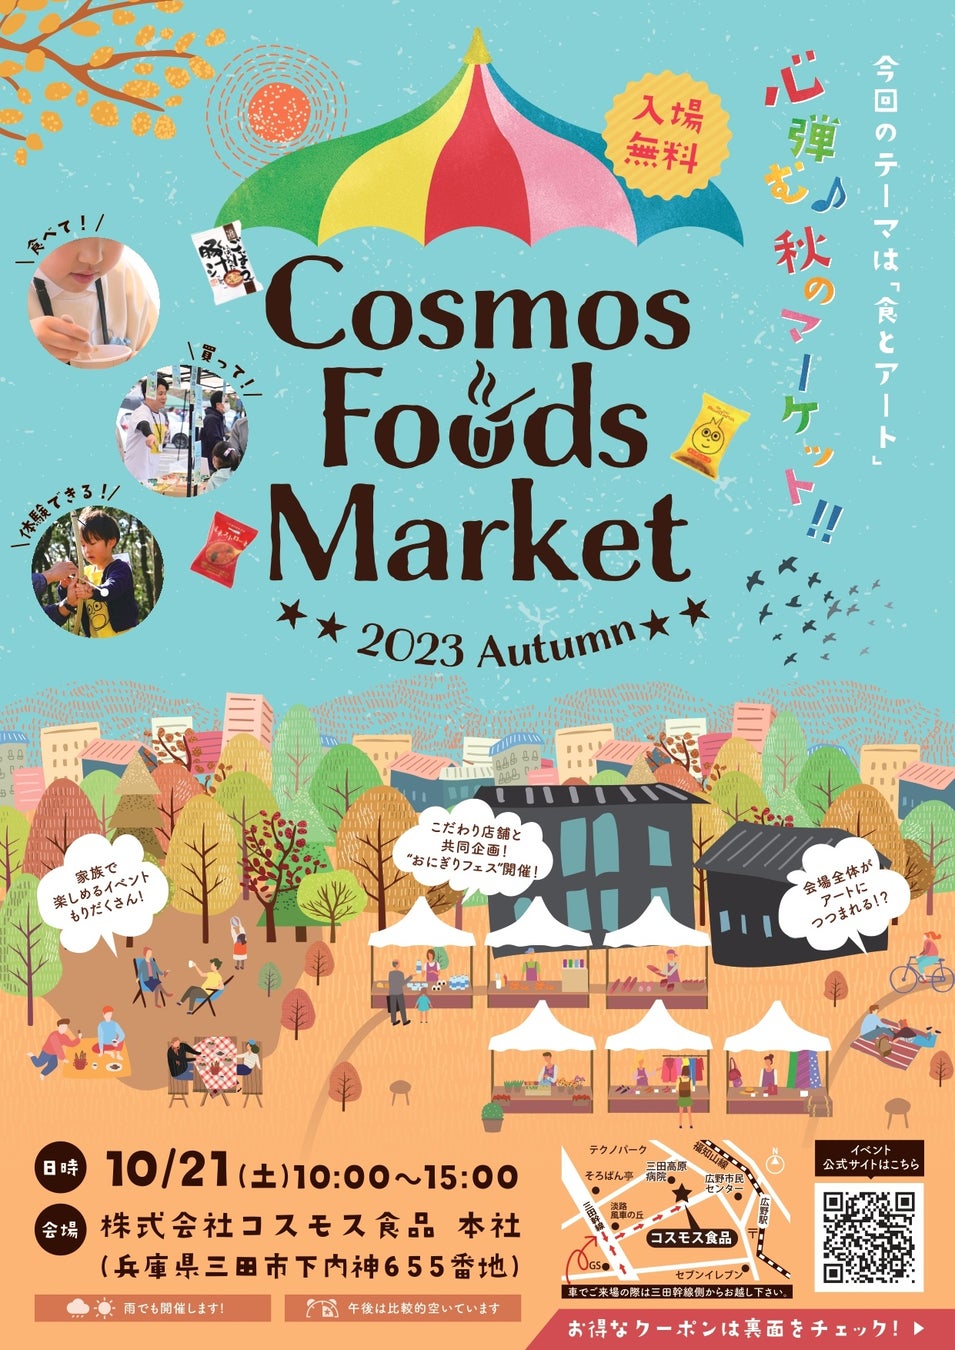 50年以上続くフリーズドライメーカーが地域の方とつくる三田市の魅力発信イベント!CosmosFoodsMarket2023Autmun開催！秋のテーマは「食とアート」